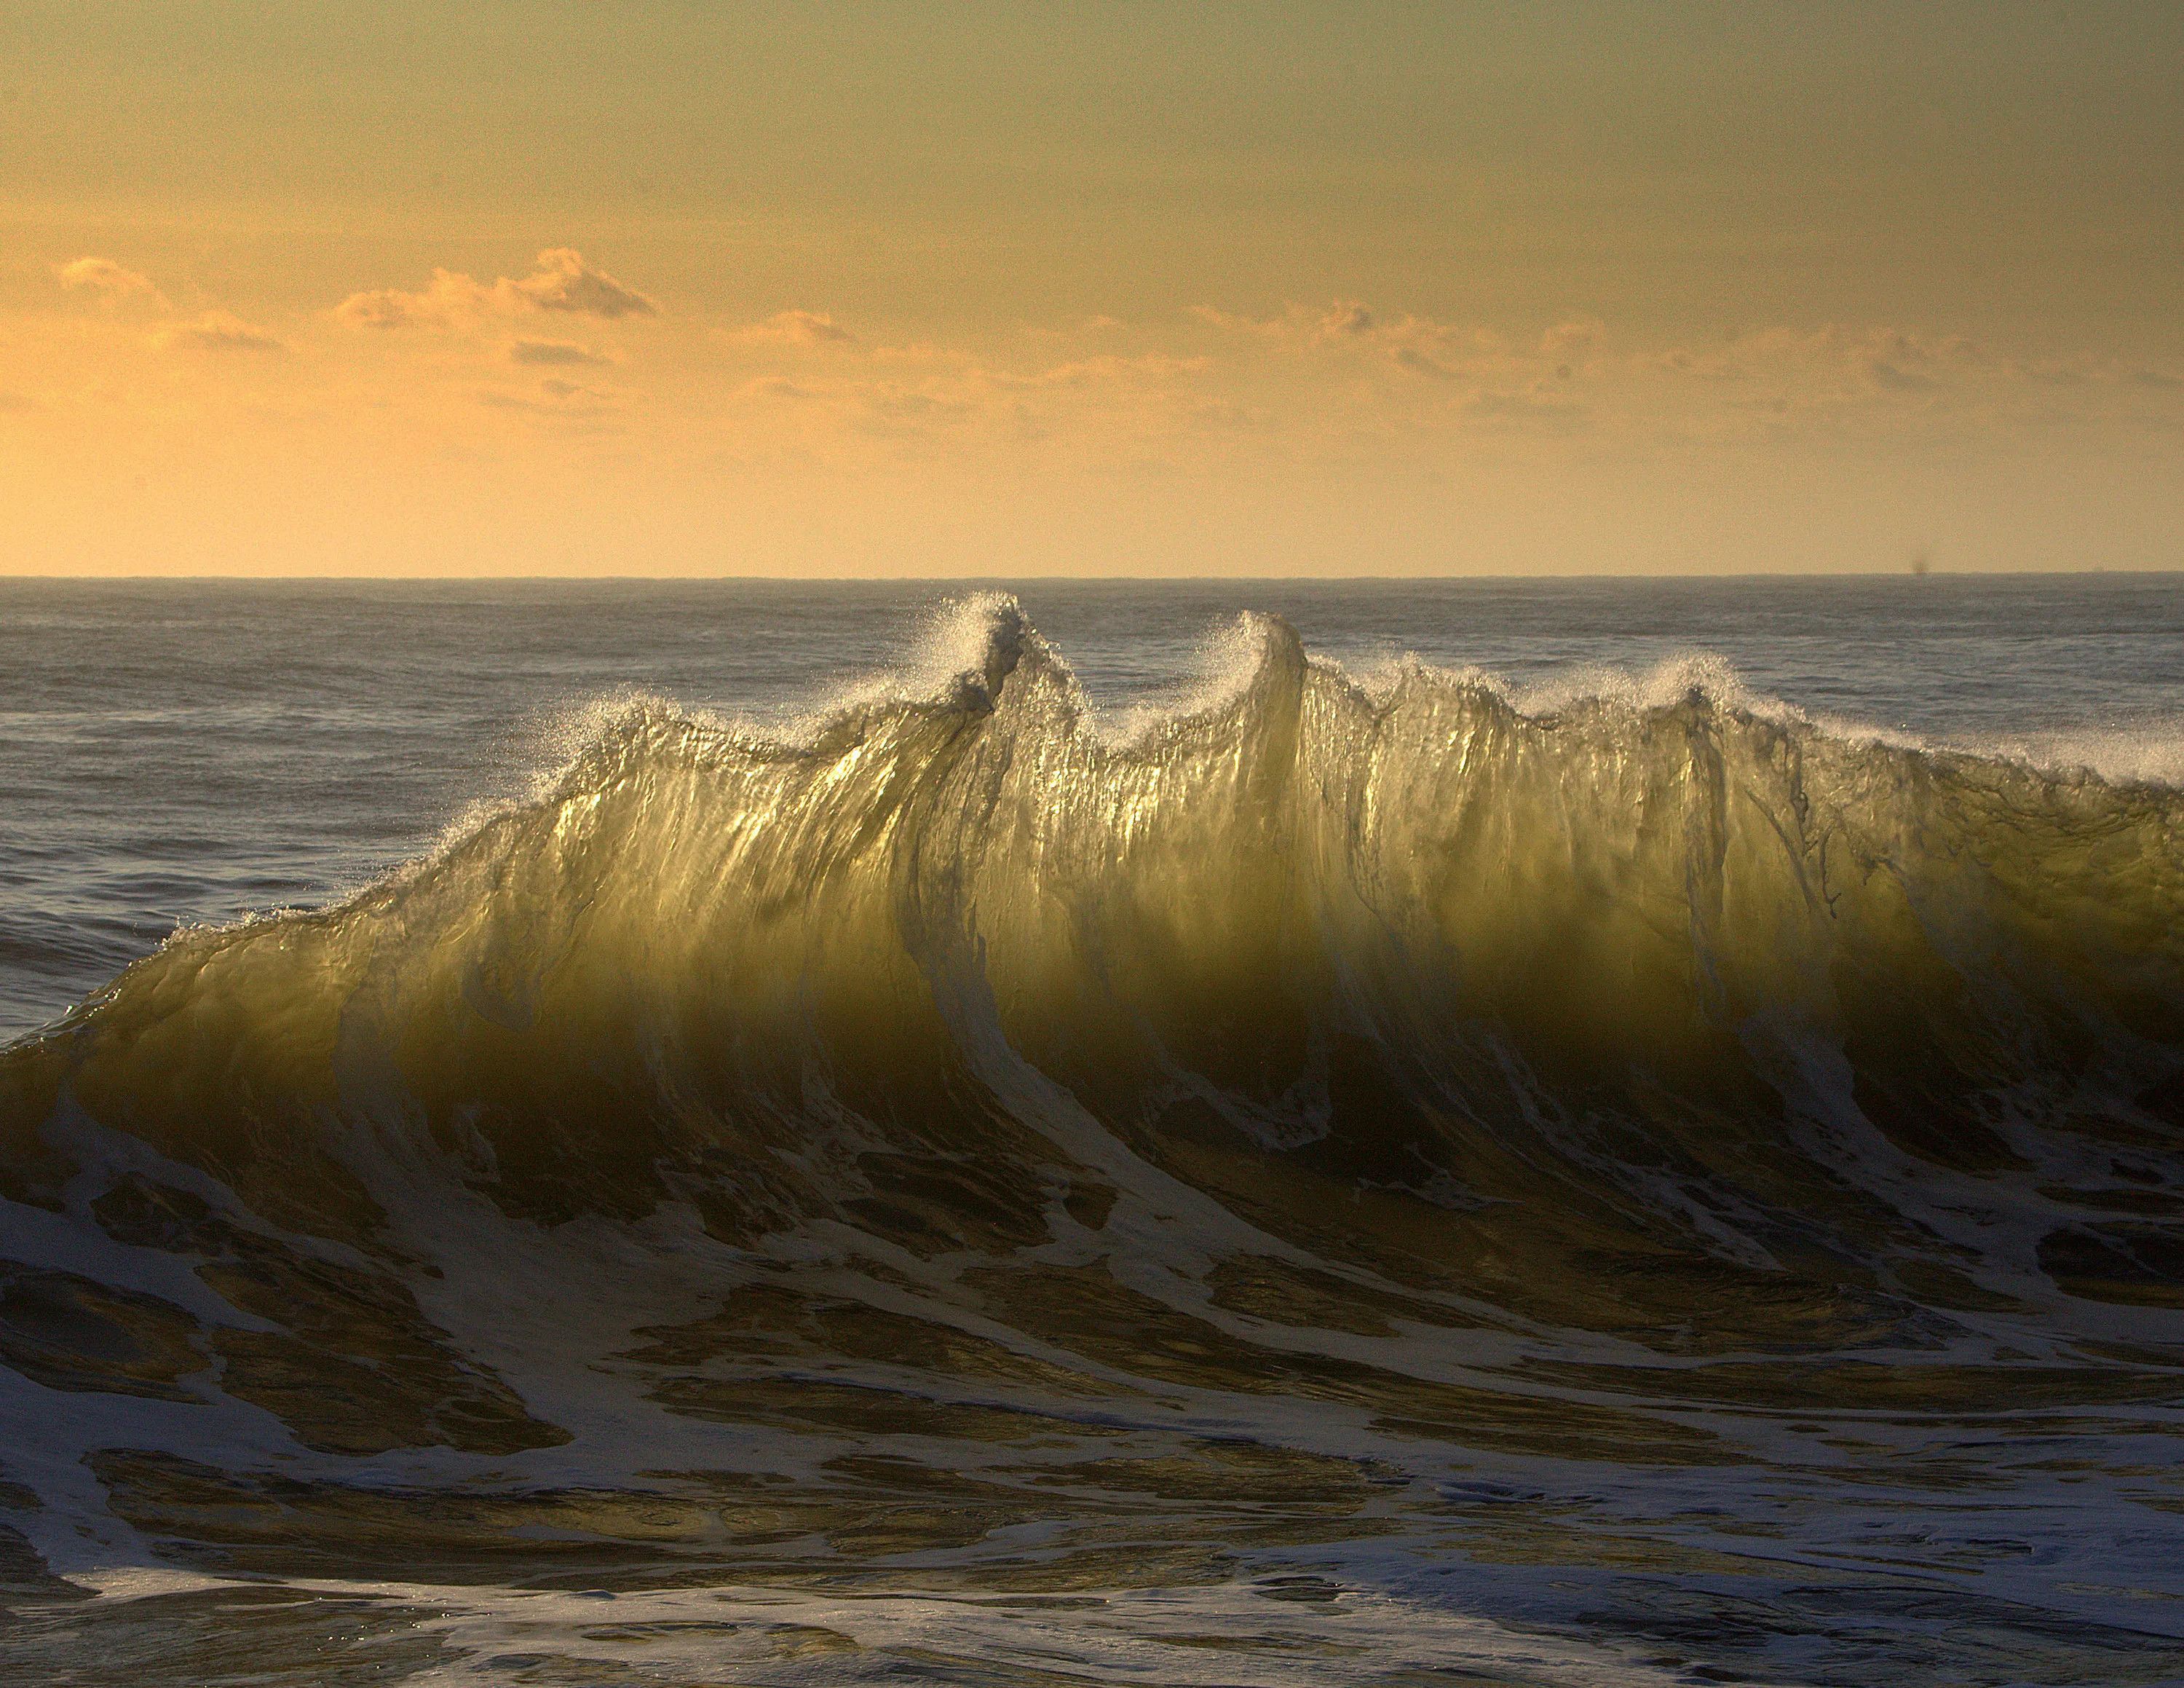 Первыми приходят волны. Море, волны. Красивые волны. Волны на берегу. Море набегающая волна.